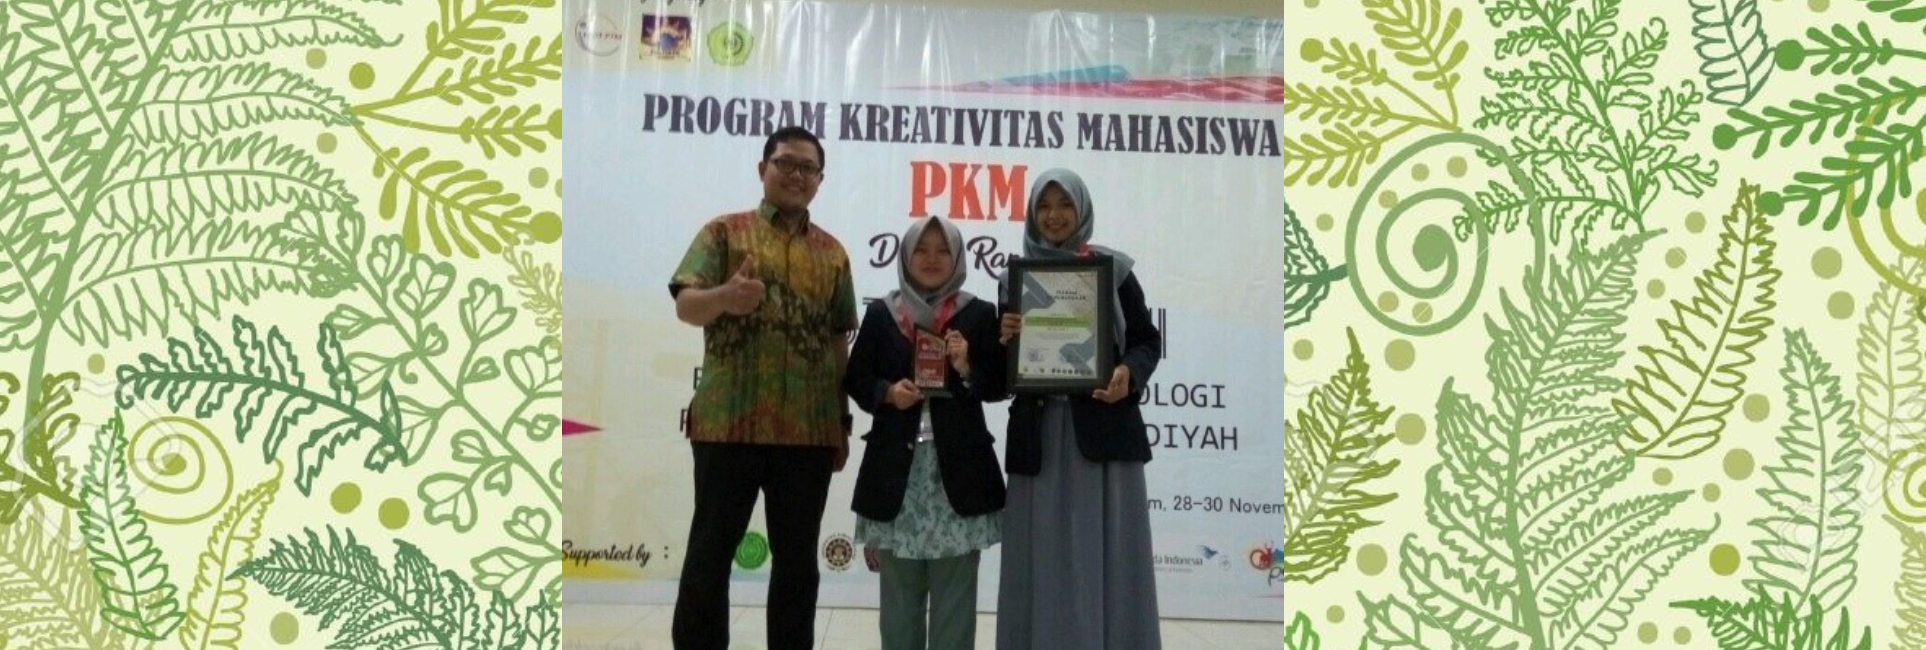 Mahasiswa Bioteknologi UNISA Mendapatkan Juara II Dalam PKM Muhammadiyah 2017